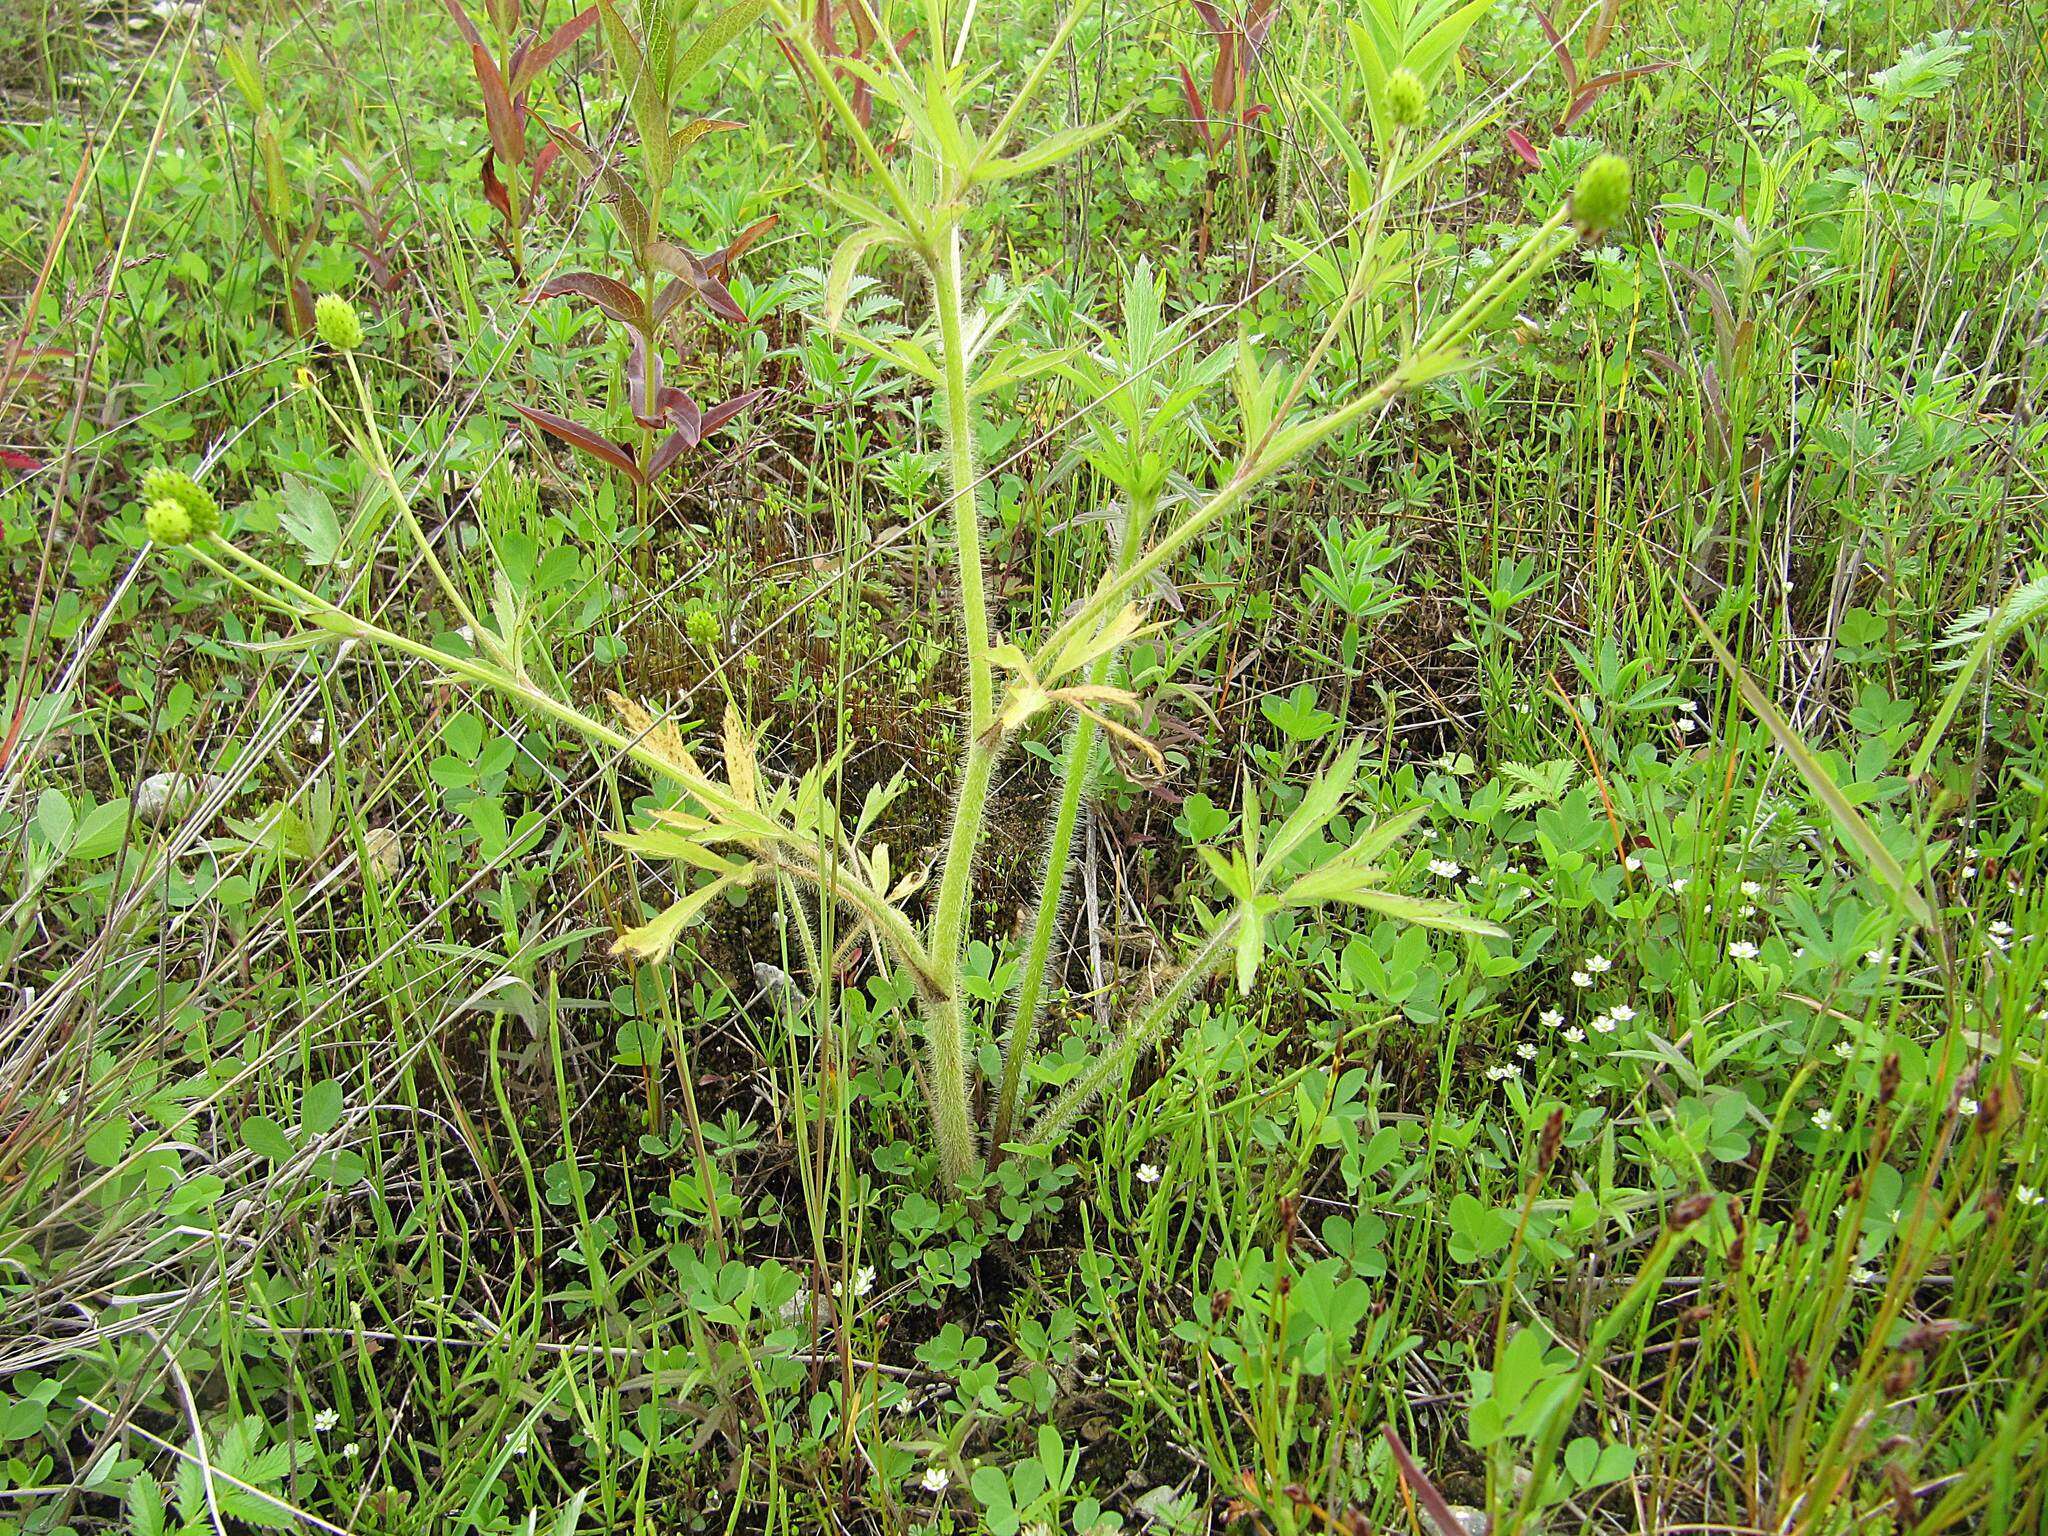 Image of Ranunculus chinensis Bunge